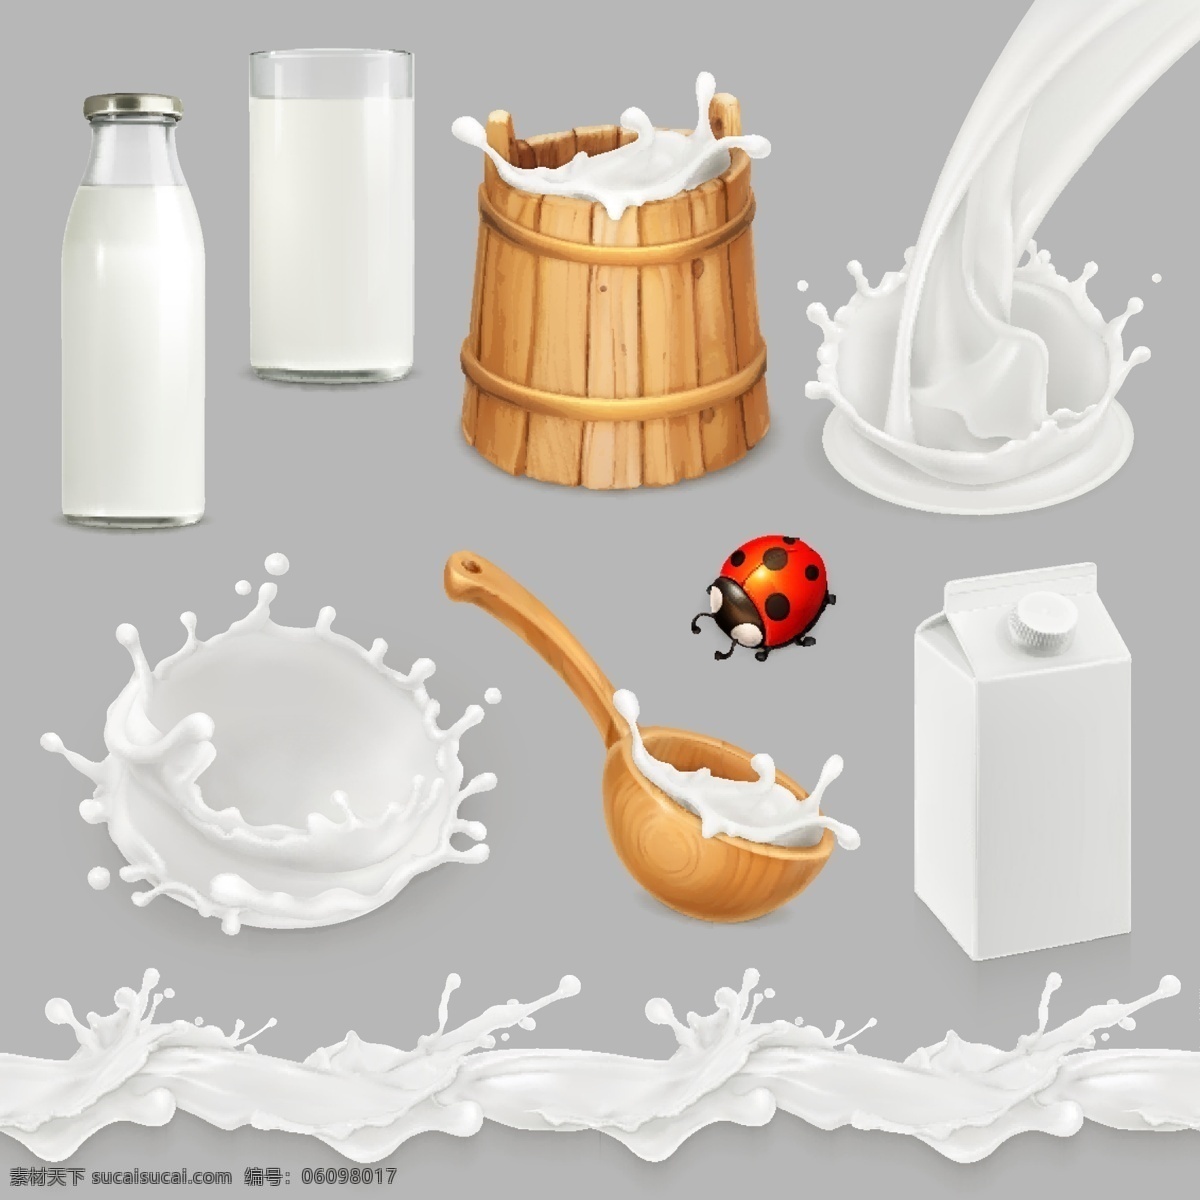 灰色 背景 上 木桶 木勺 牛奶 瓶子 杯子 纸盒牛奶 瓢虫 动感牛奶 饮品饮料 标志图标 其他图标